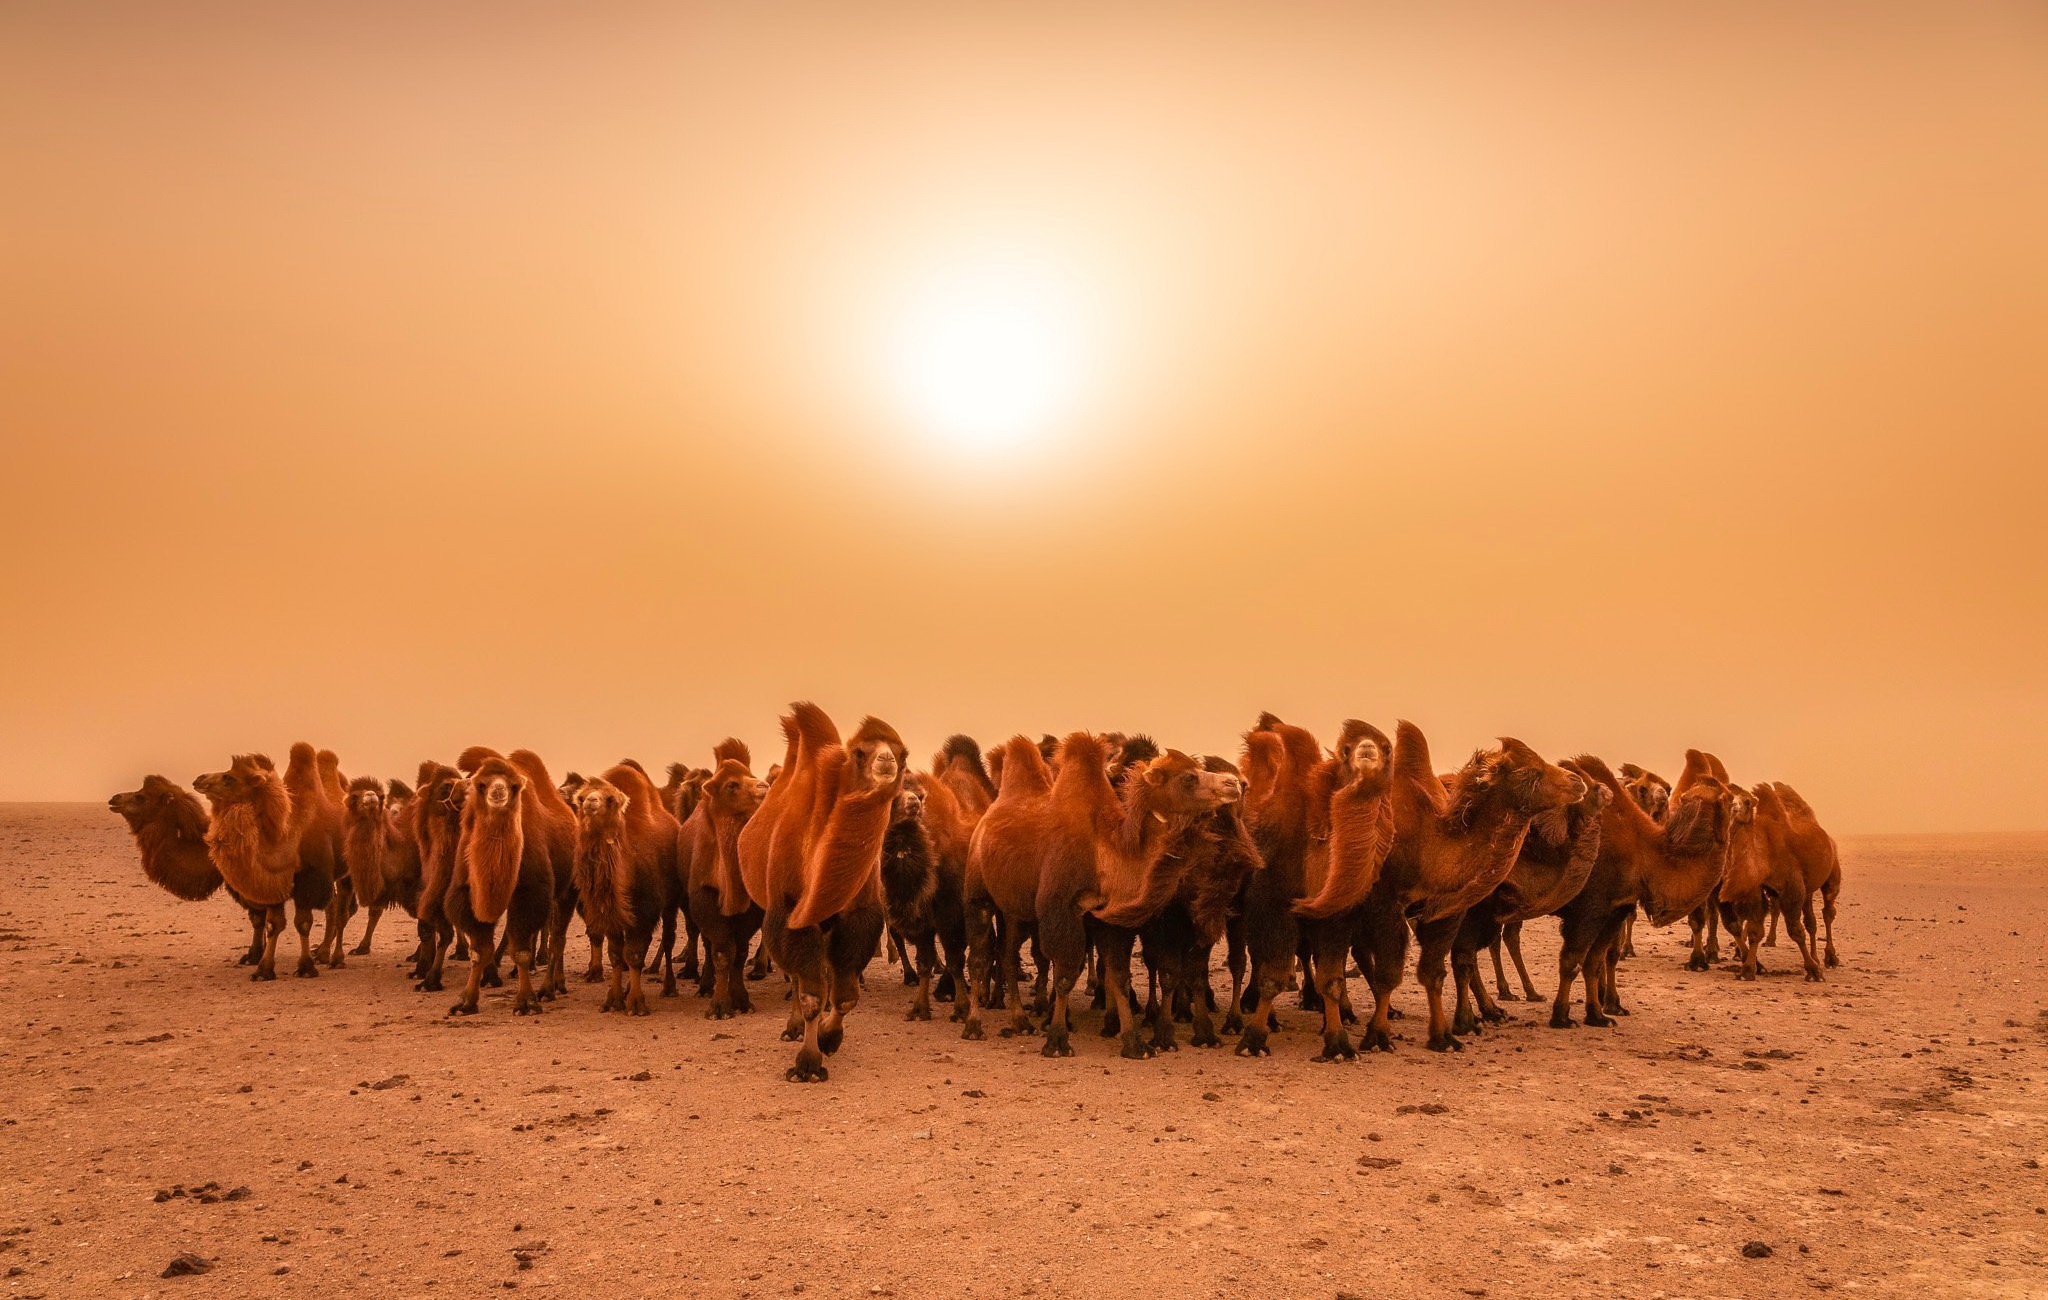 Descarga gratuita de fondo de pantalla para móvil de Animales, Desierto, Camello.